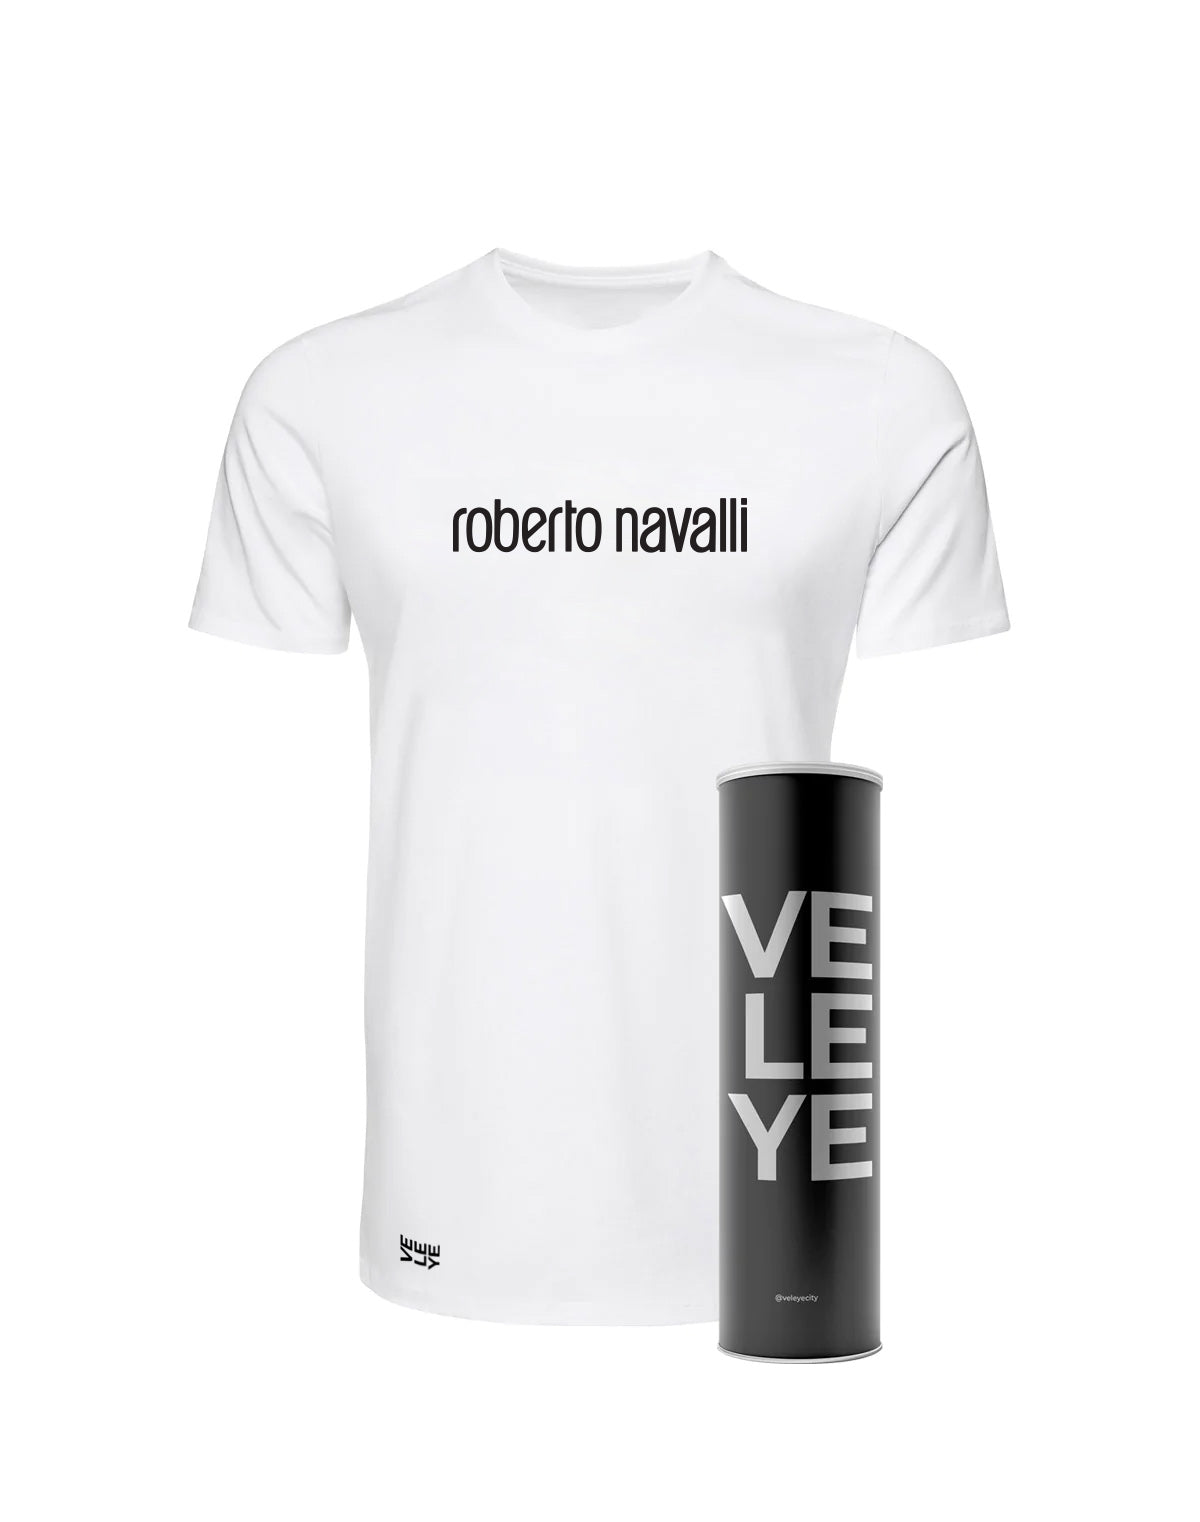 Veleye Limited V1 - Roberto Navalli